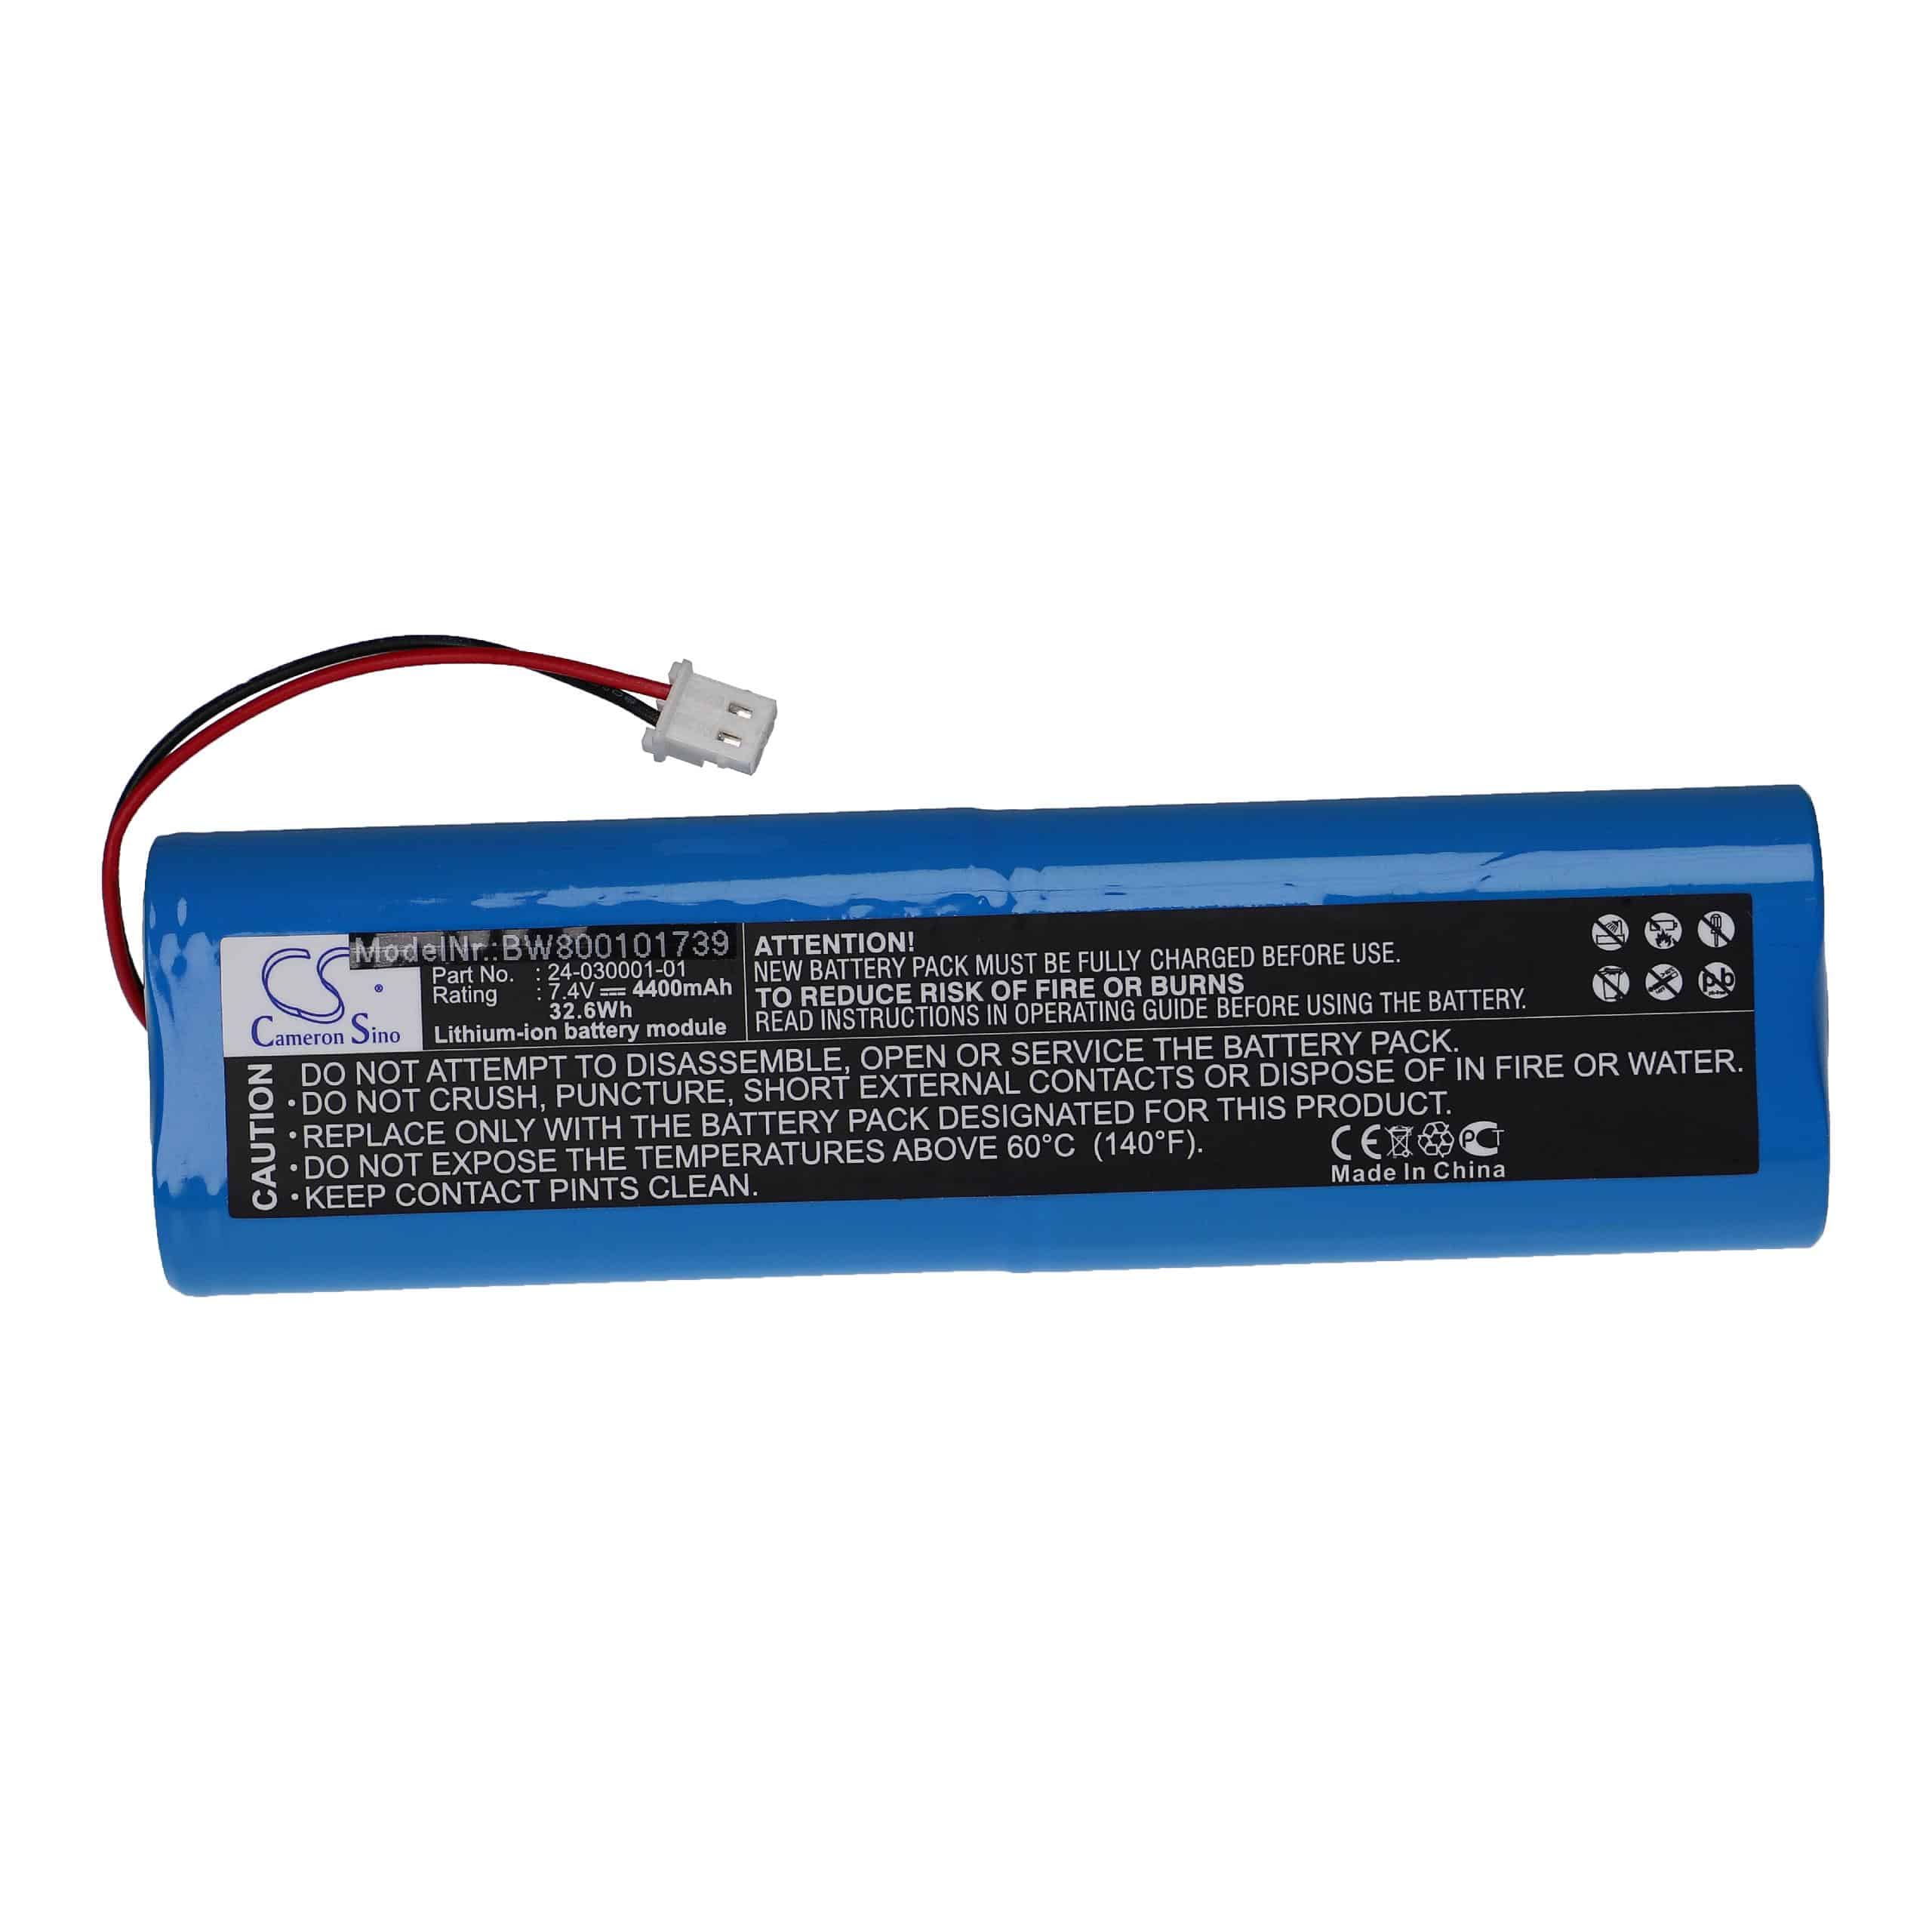 Akumulator do przyrządu pomiarowego zamiennik Topcon 24-030001-01 - 4400 mAh 7,4 V Li-Ion